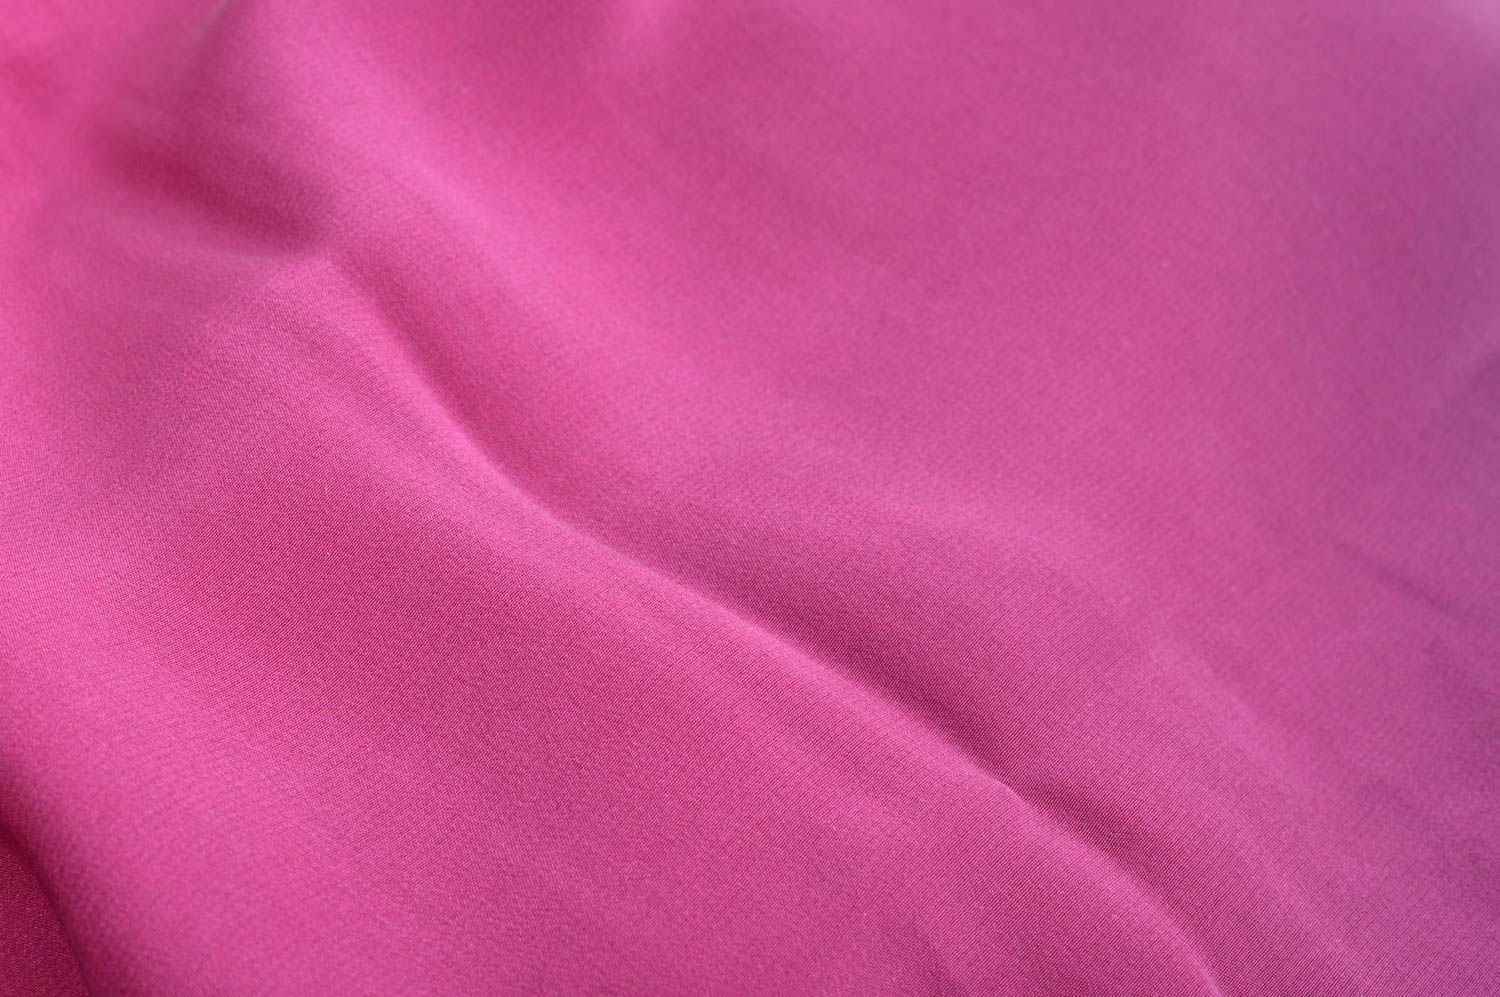 Платок ручной работы платок из шелка женский аксессуар розовый расписной фото 5